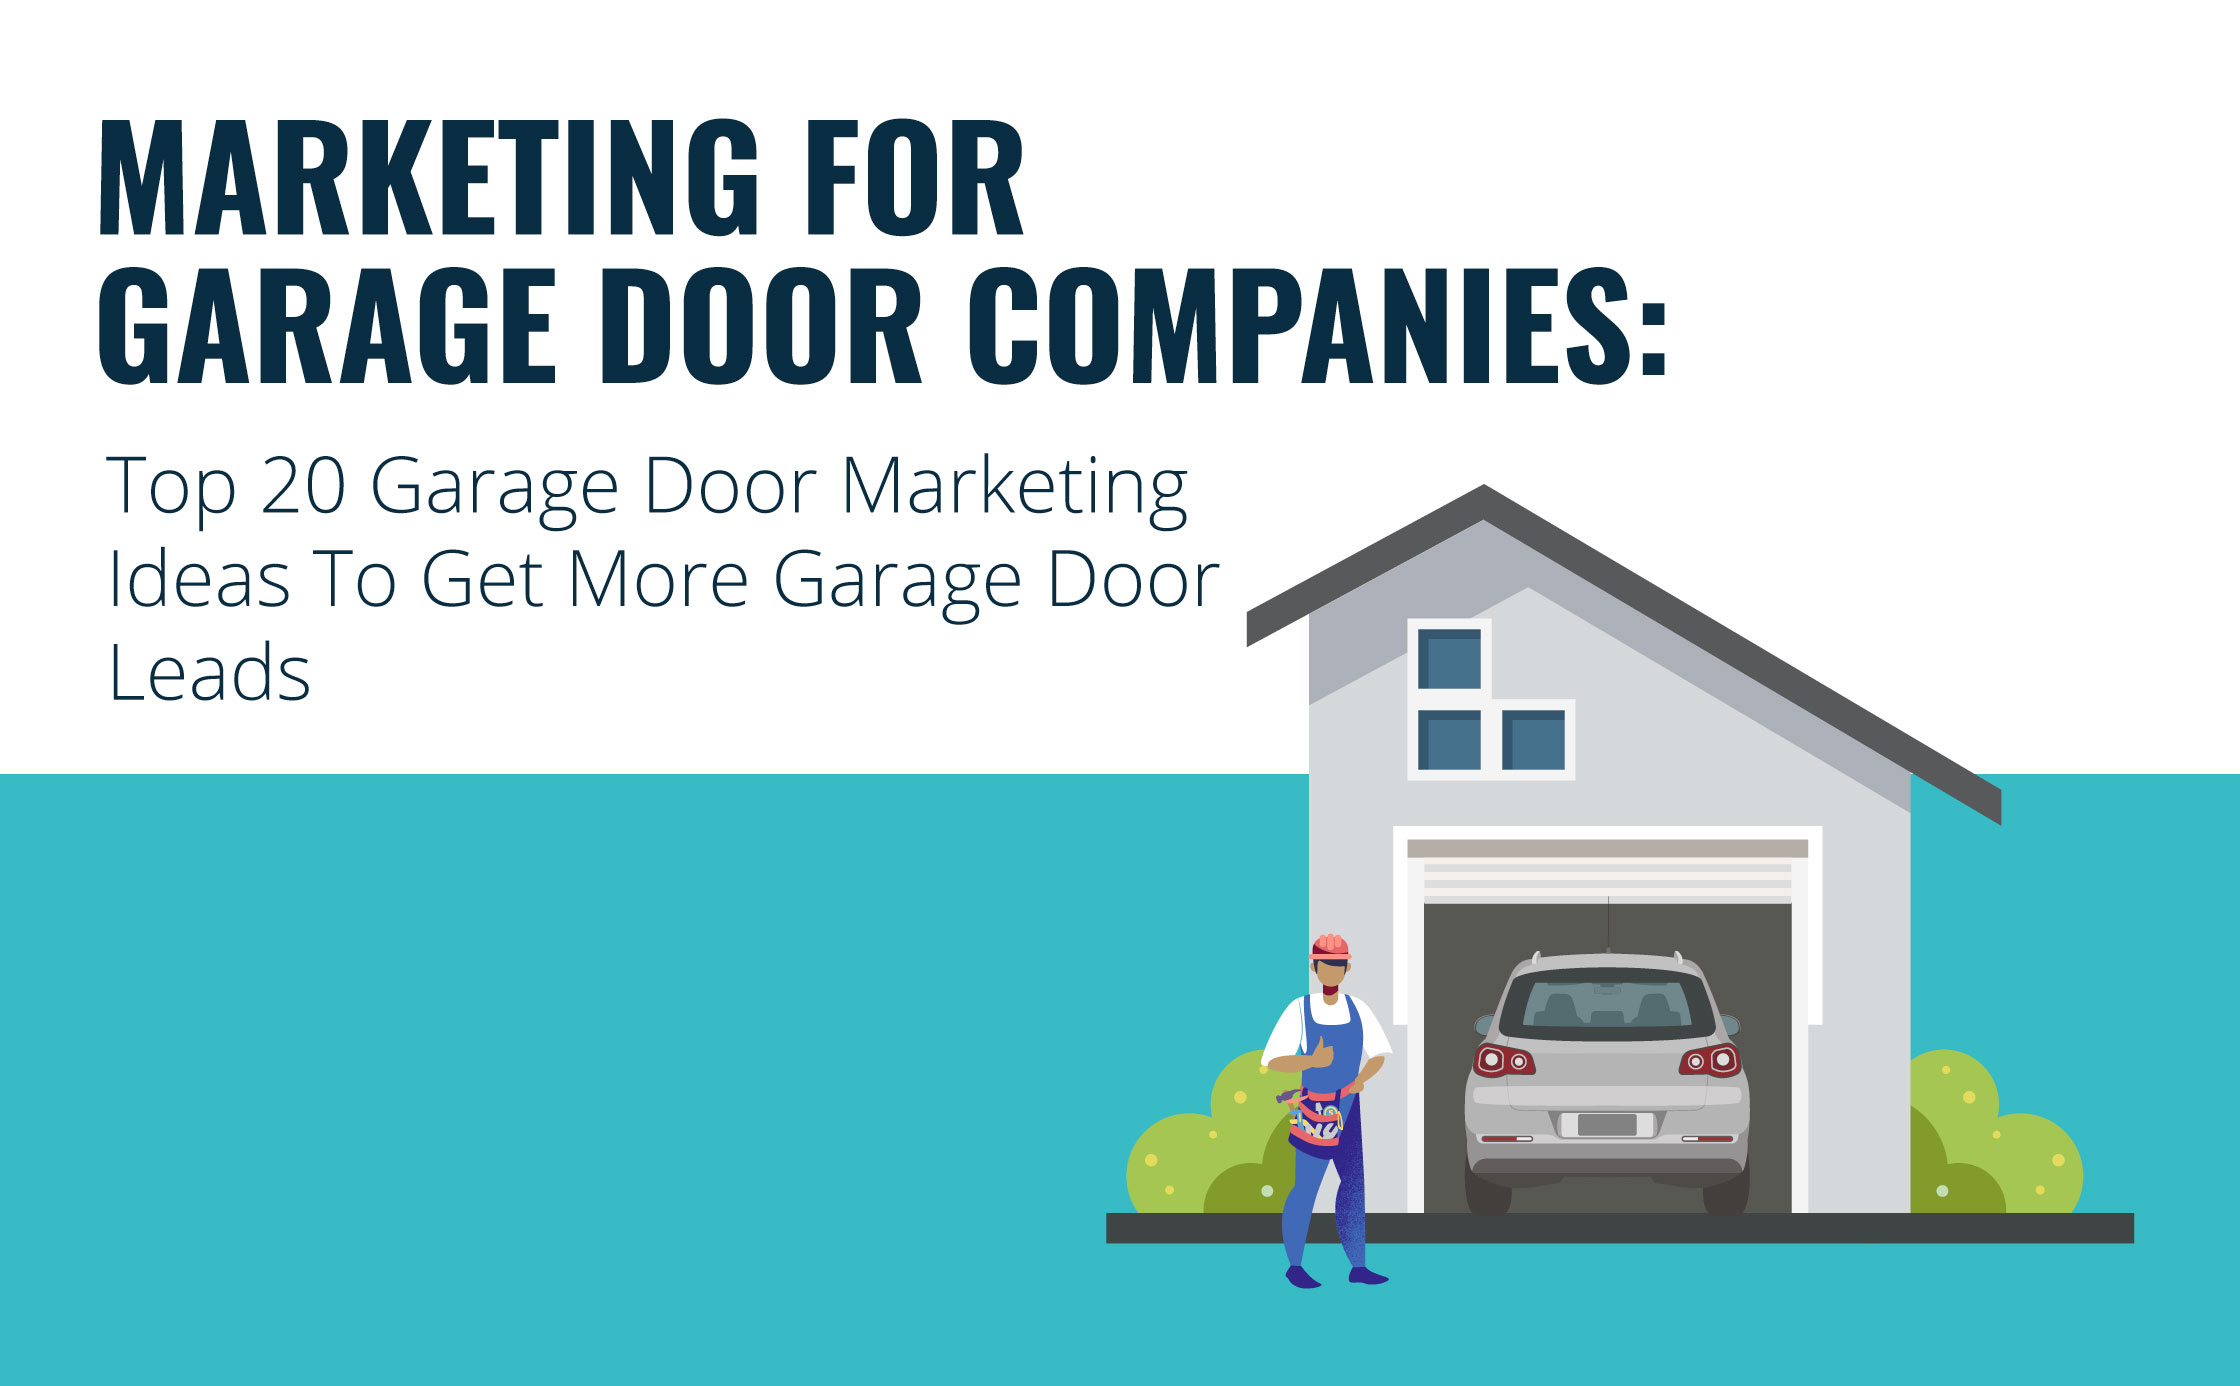 Marketing For Garage Door Companies: Top 20 Garage Door Marketing Ideas To Get More Garage Door Leads Graphic